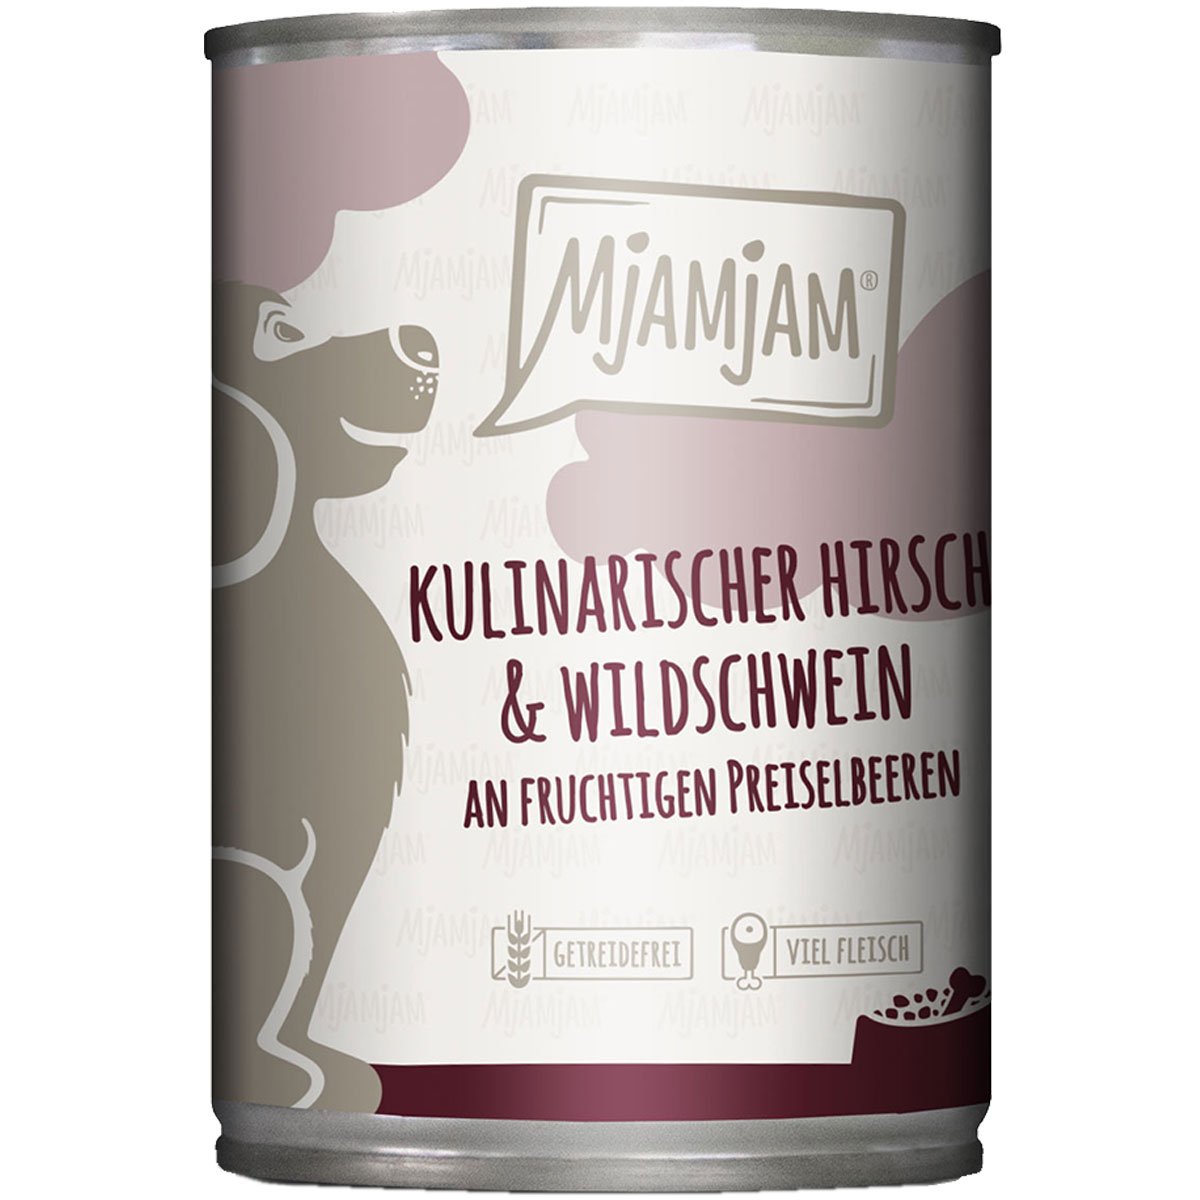 MjAMjAM kulinarischer Hirsch&Wildschwein an Preiselbeeren 6x400g von MjAMjAM